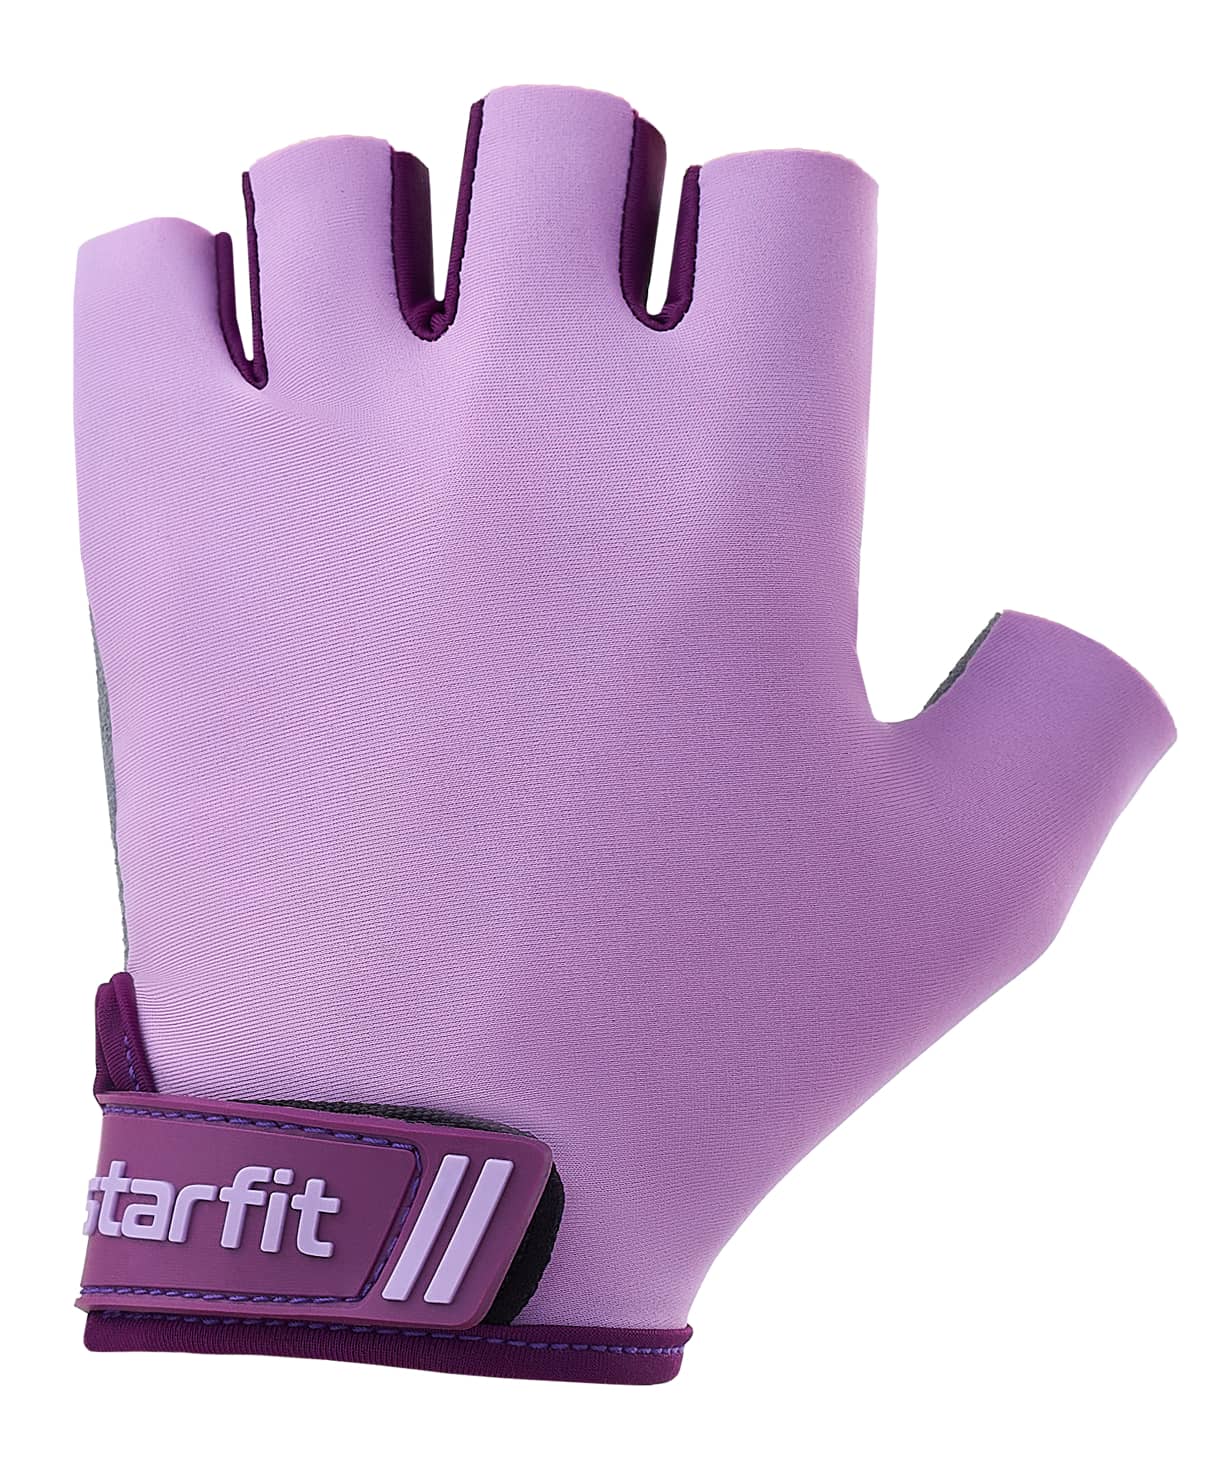 Купить Перчатки для фитнеса Star Fit WG-101, фиолетовый,